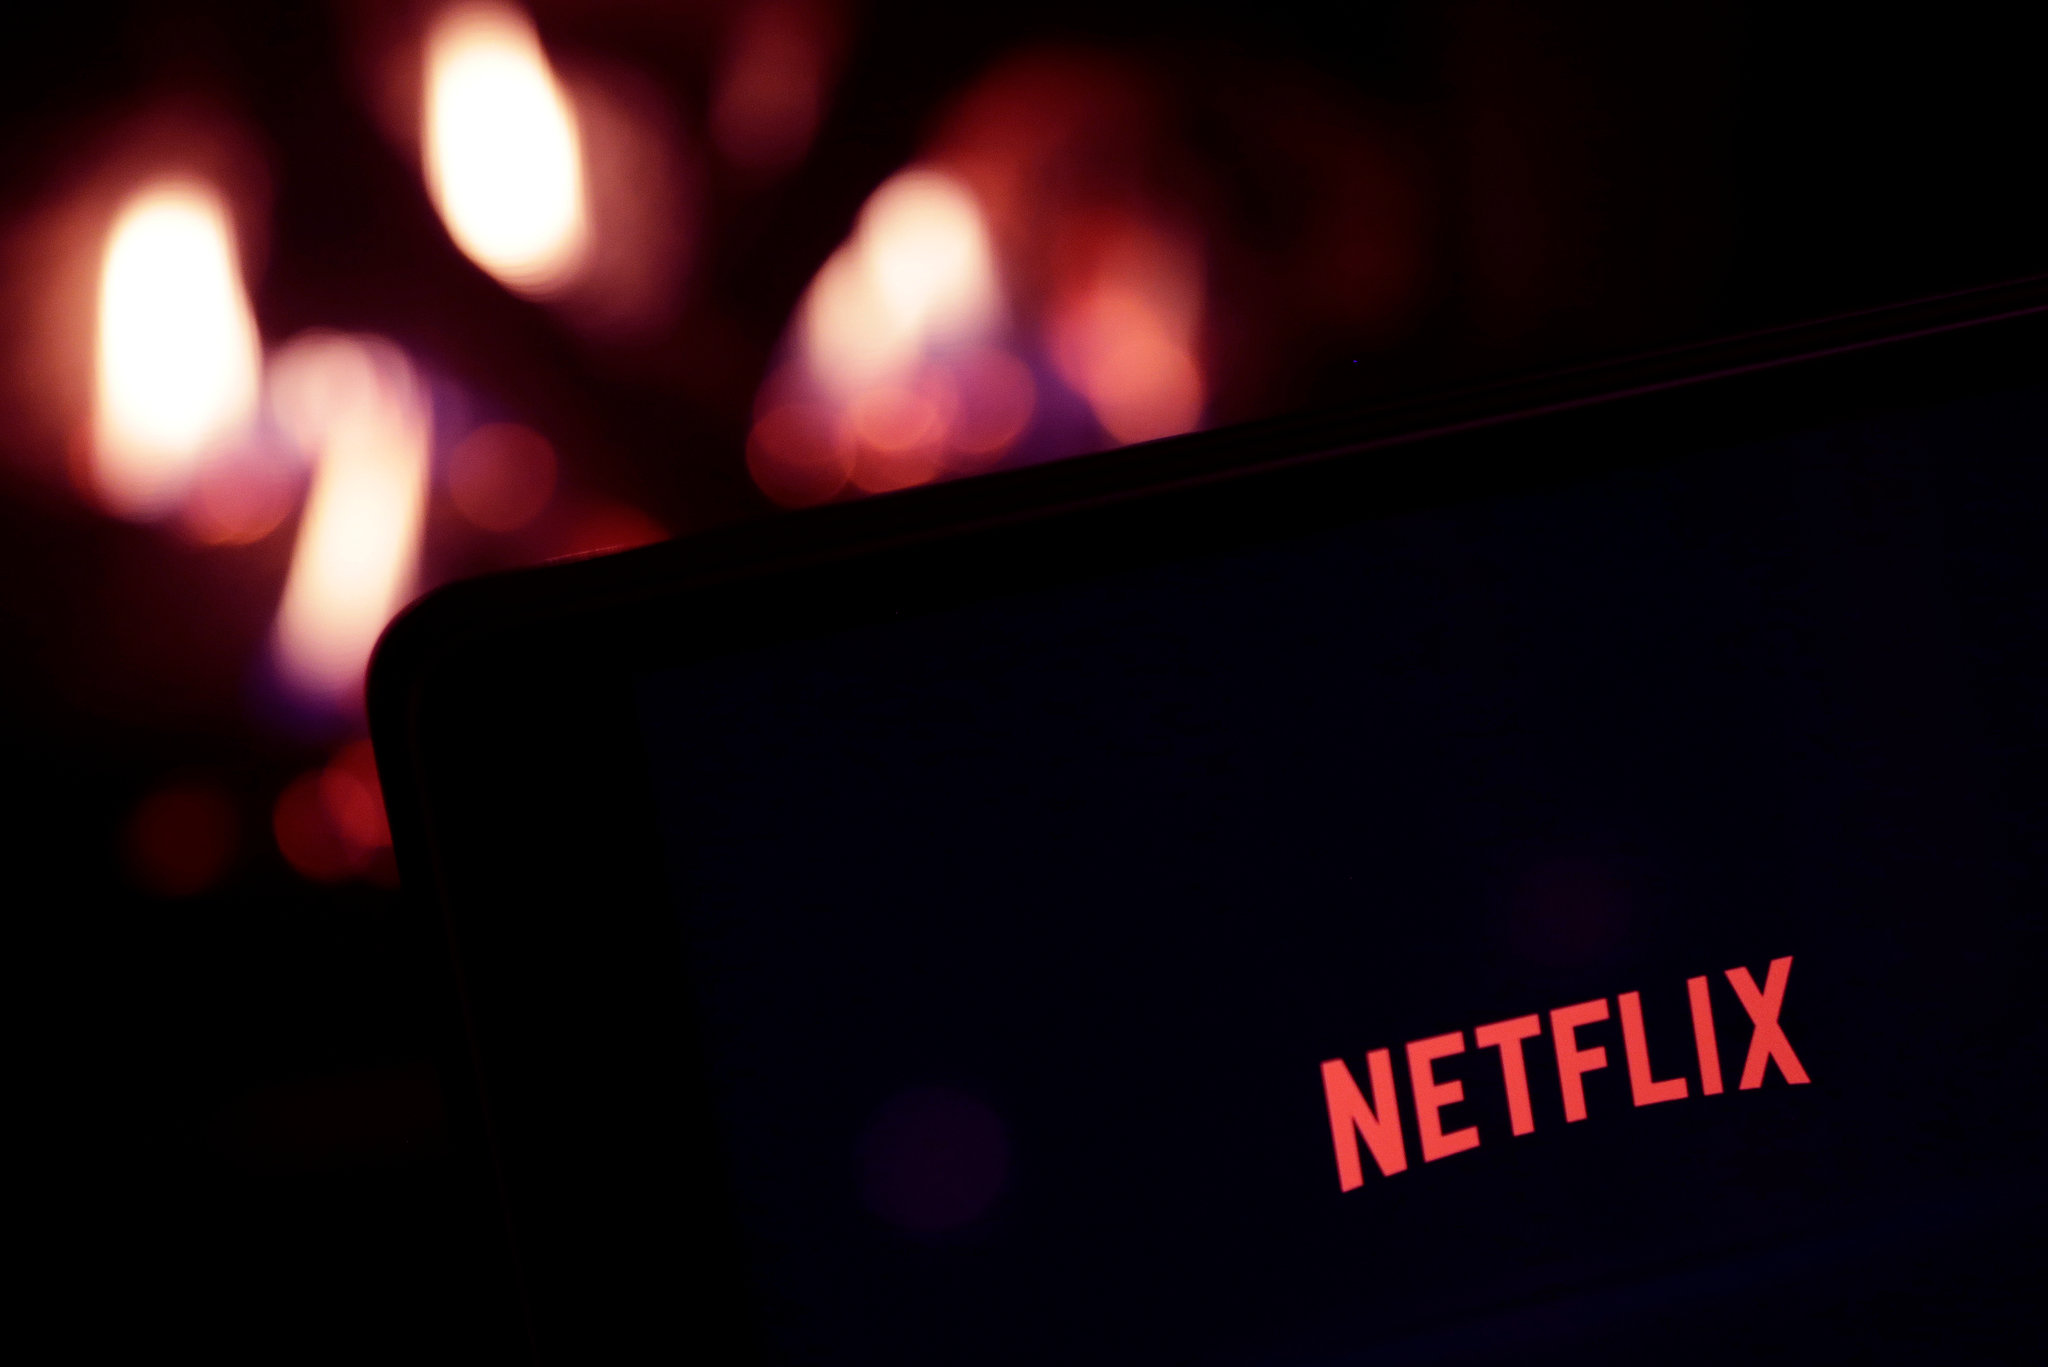 Netflix ve čtvrtletí přišel o 970.000 předplatitelů, čekal horší výsledek